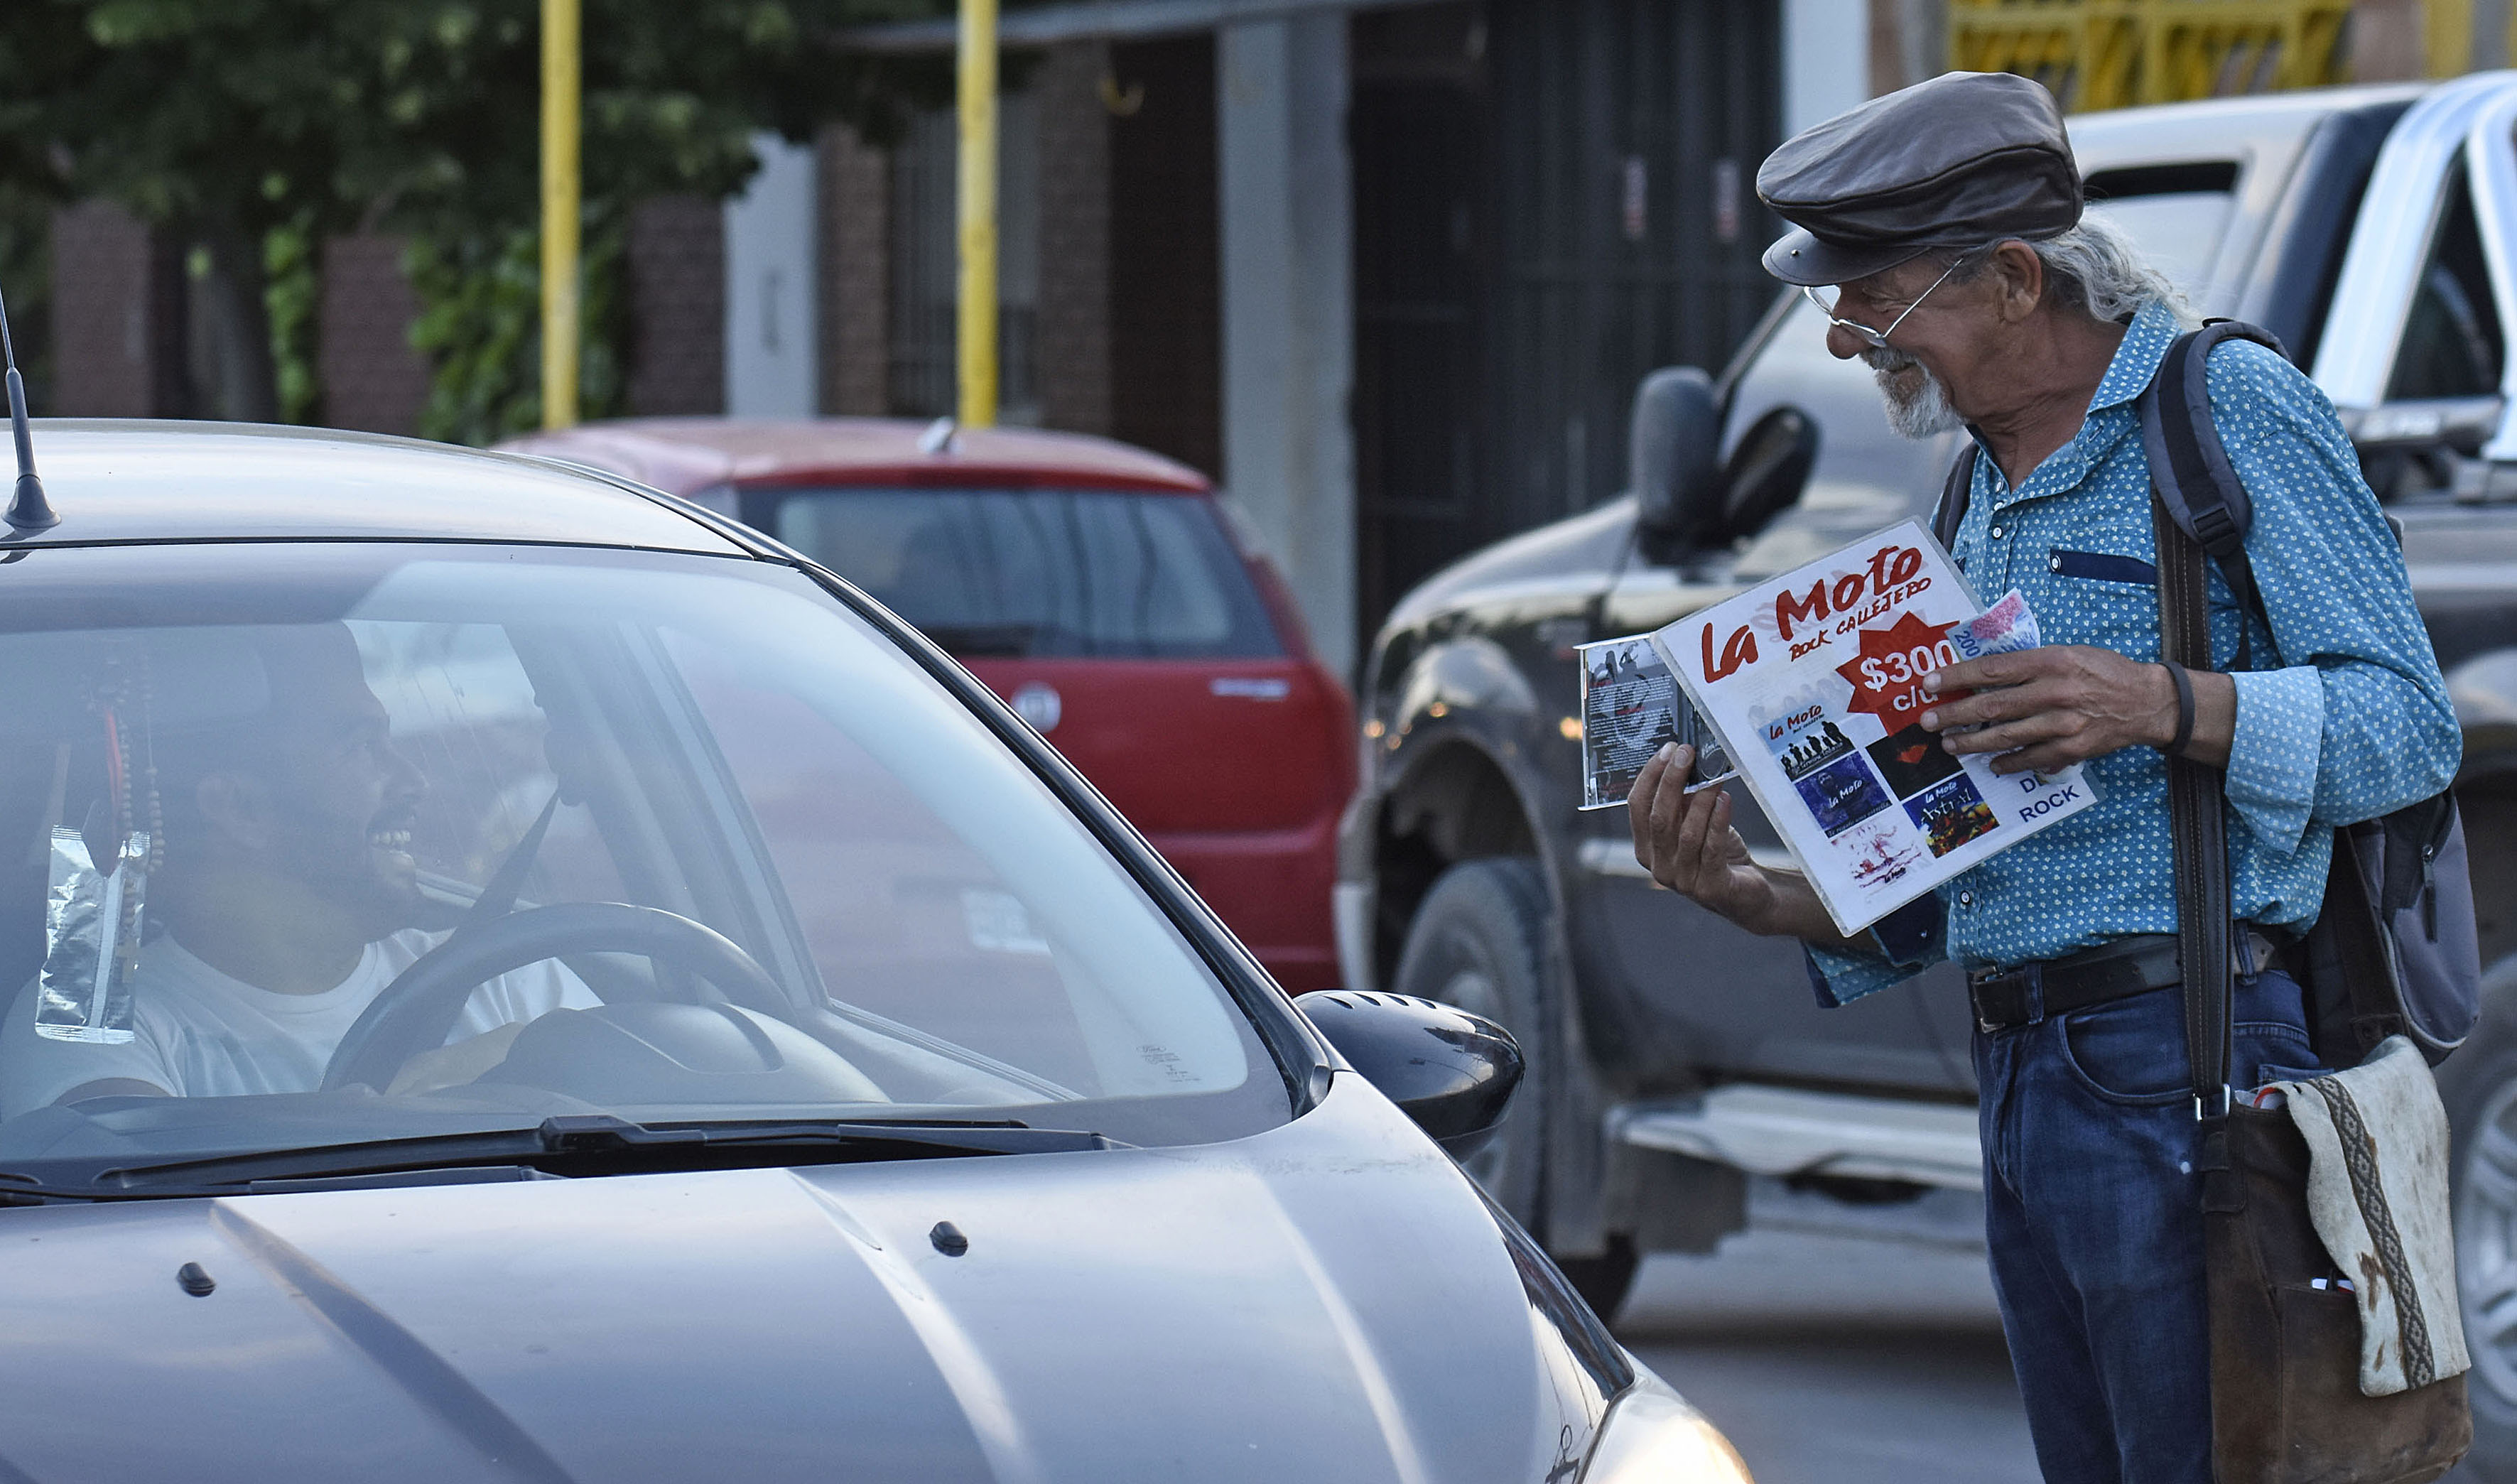 El "Mono" recorría las calles de Neuquén, cds en mano promocionando a La Moto. (Foto: Florencia Salto).